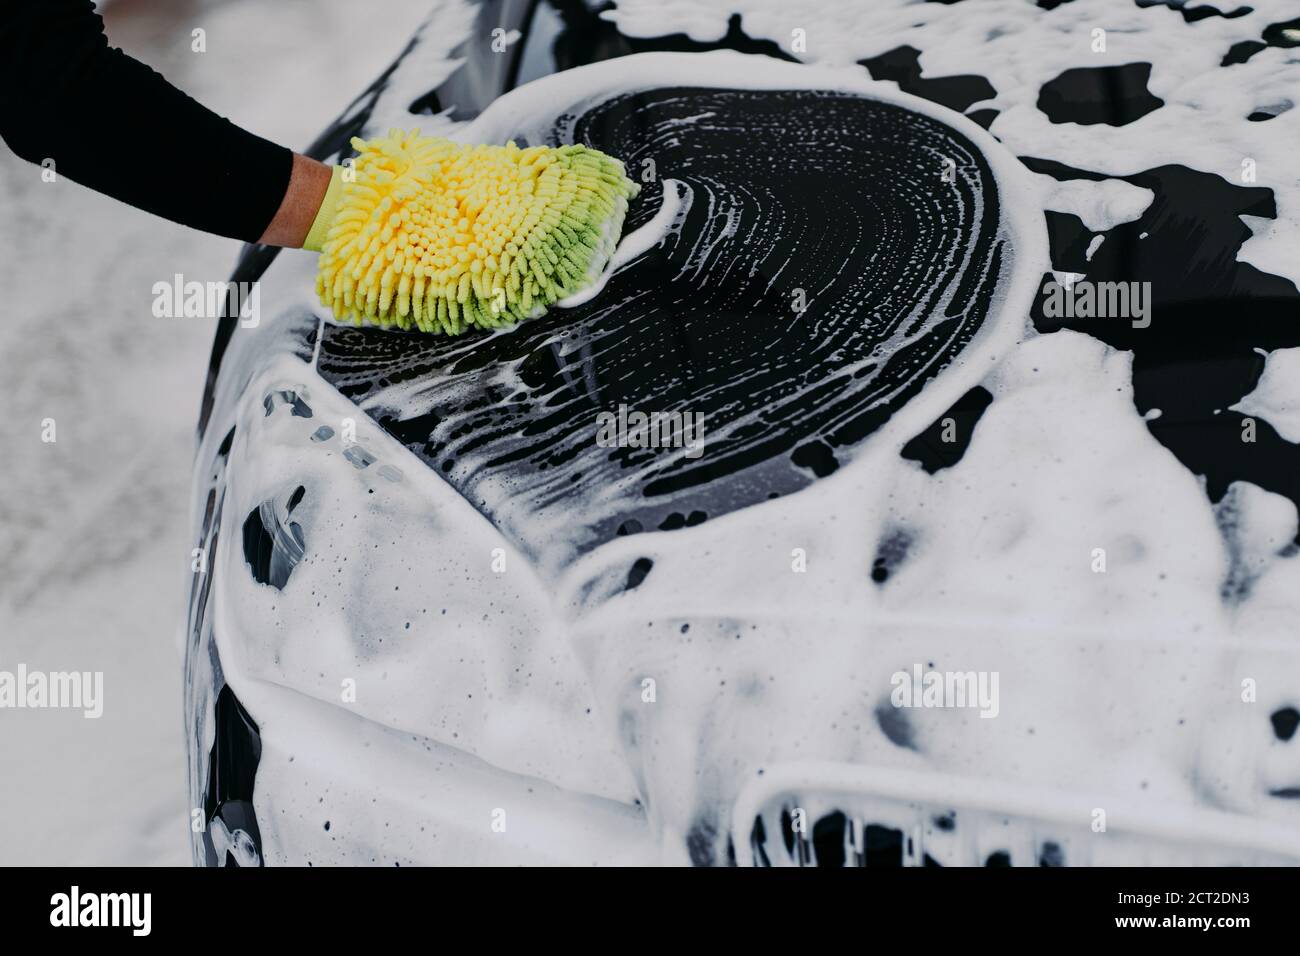 mans mano sujetando una esponja para lavar el coche. auto negro con pompas  de jabón. concepto de limpieza. trabajador limpiando automovil 13185225  Foto de stock en Vecteezy